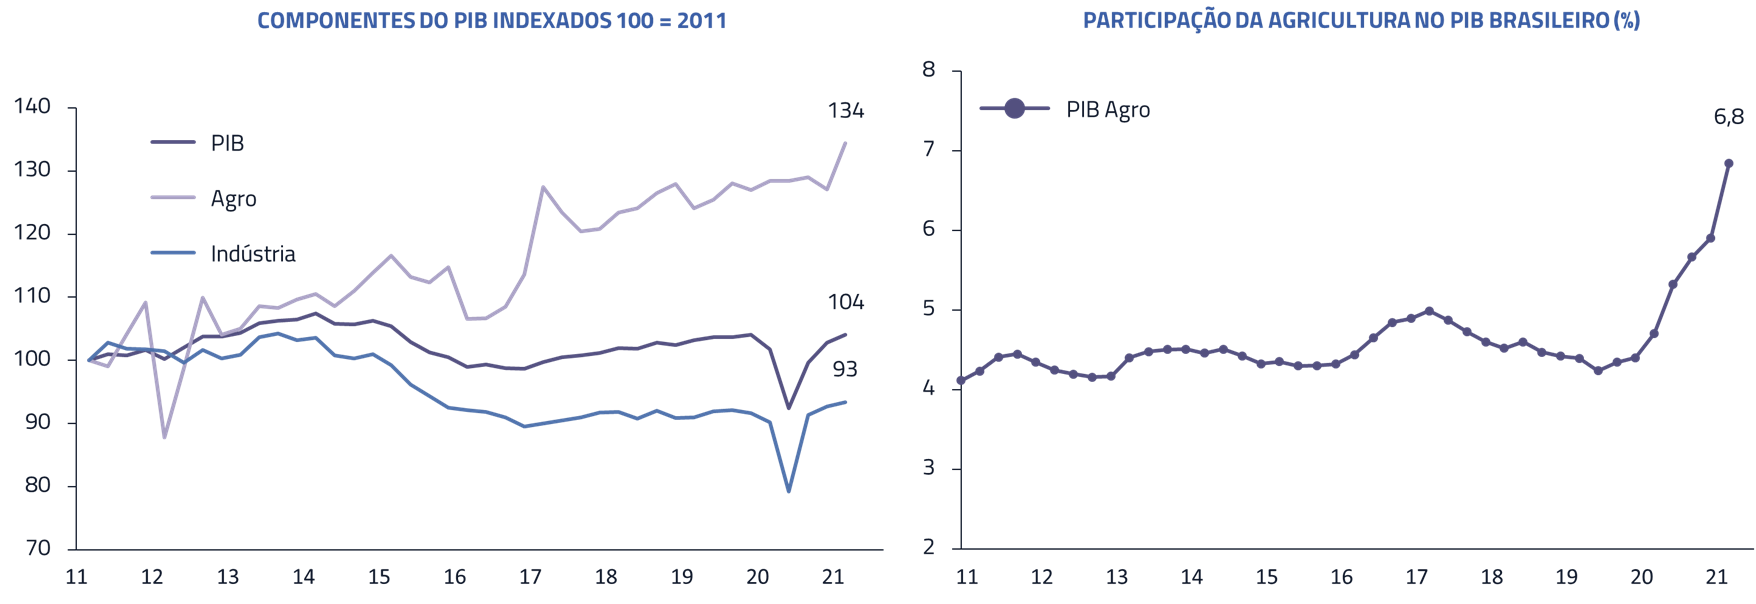 Componentes do PIB indexados 100 = 2011 | Participação da agricultura no PIB brasileiro (%)